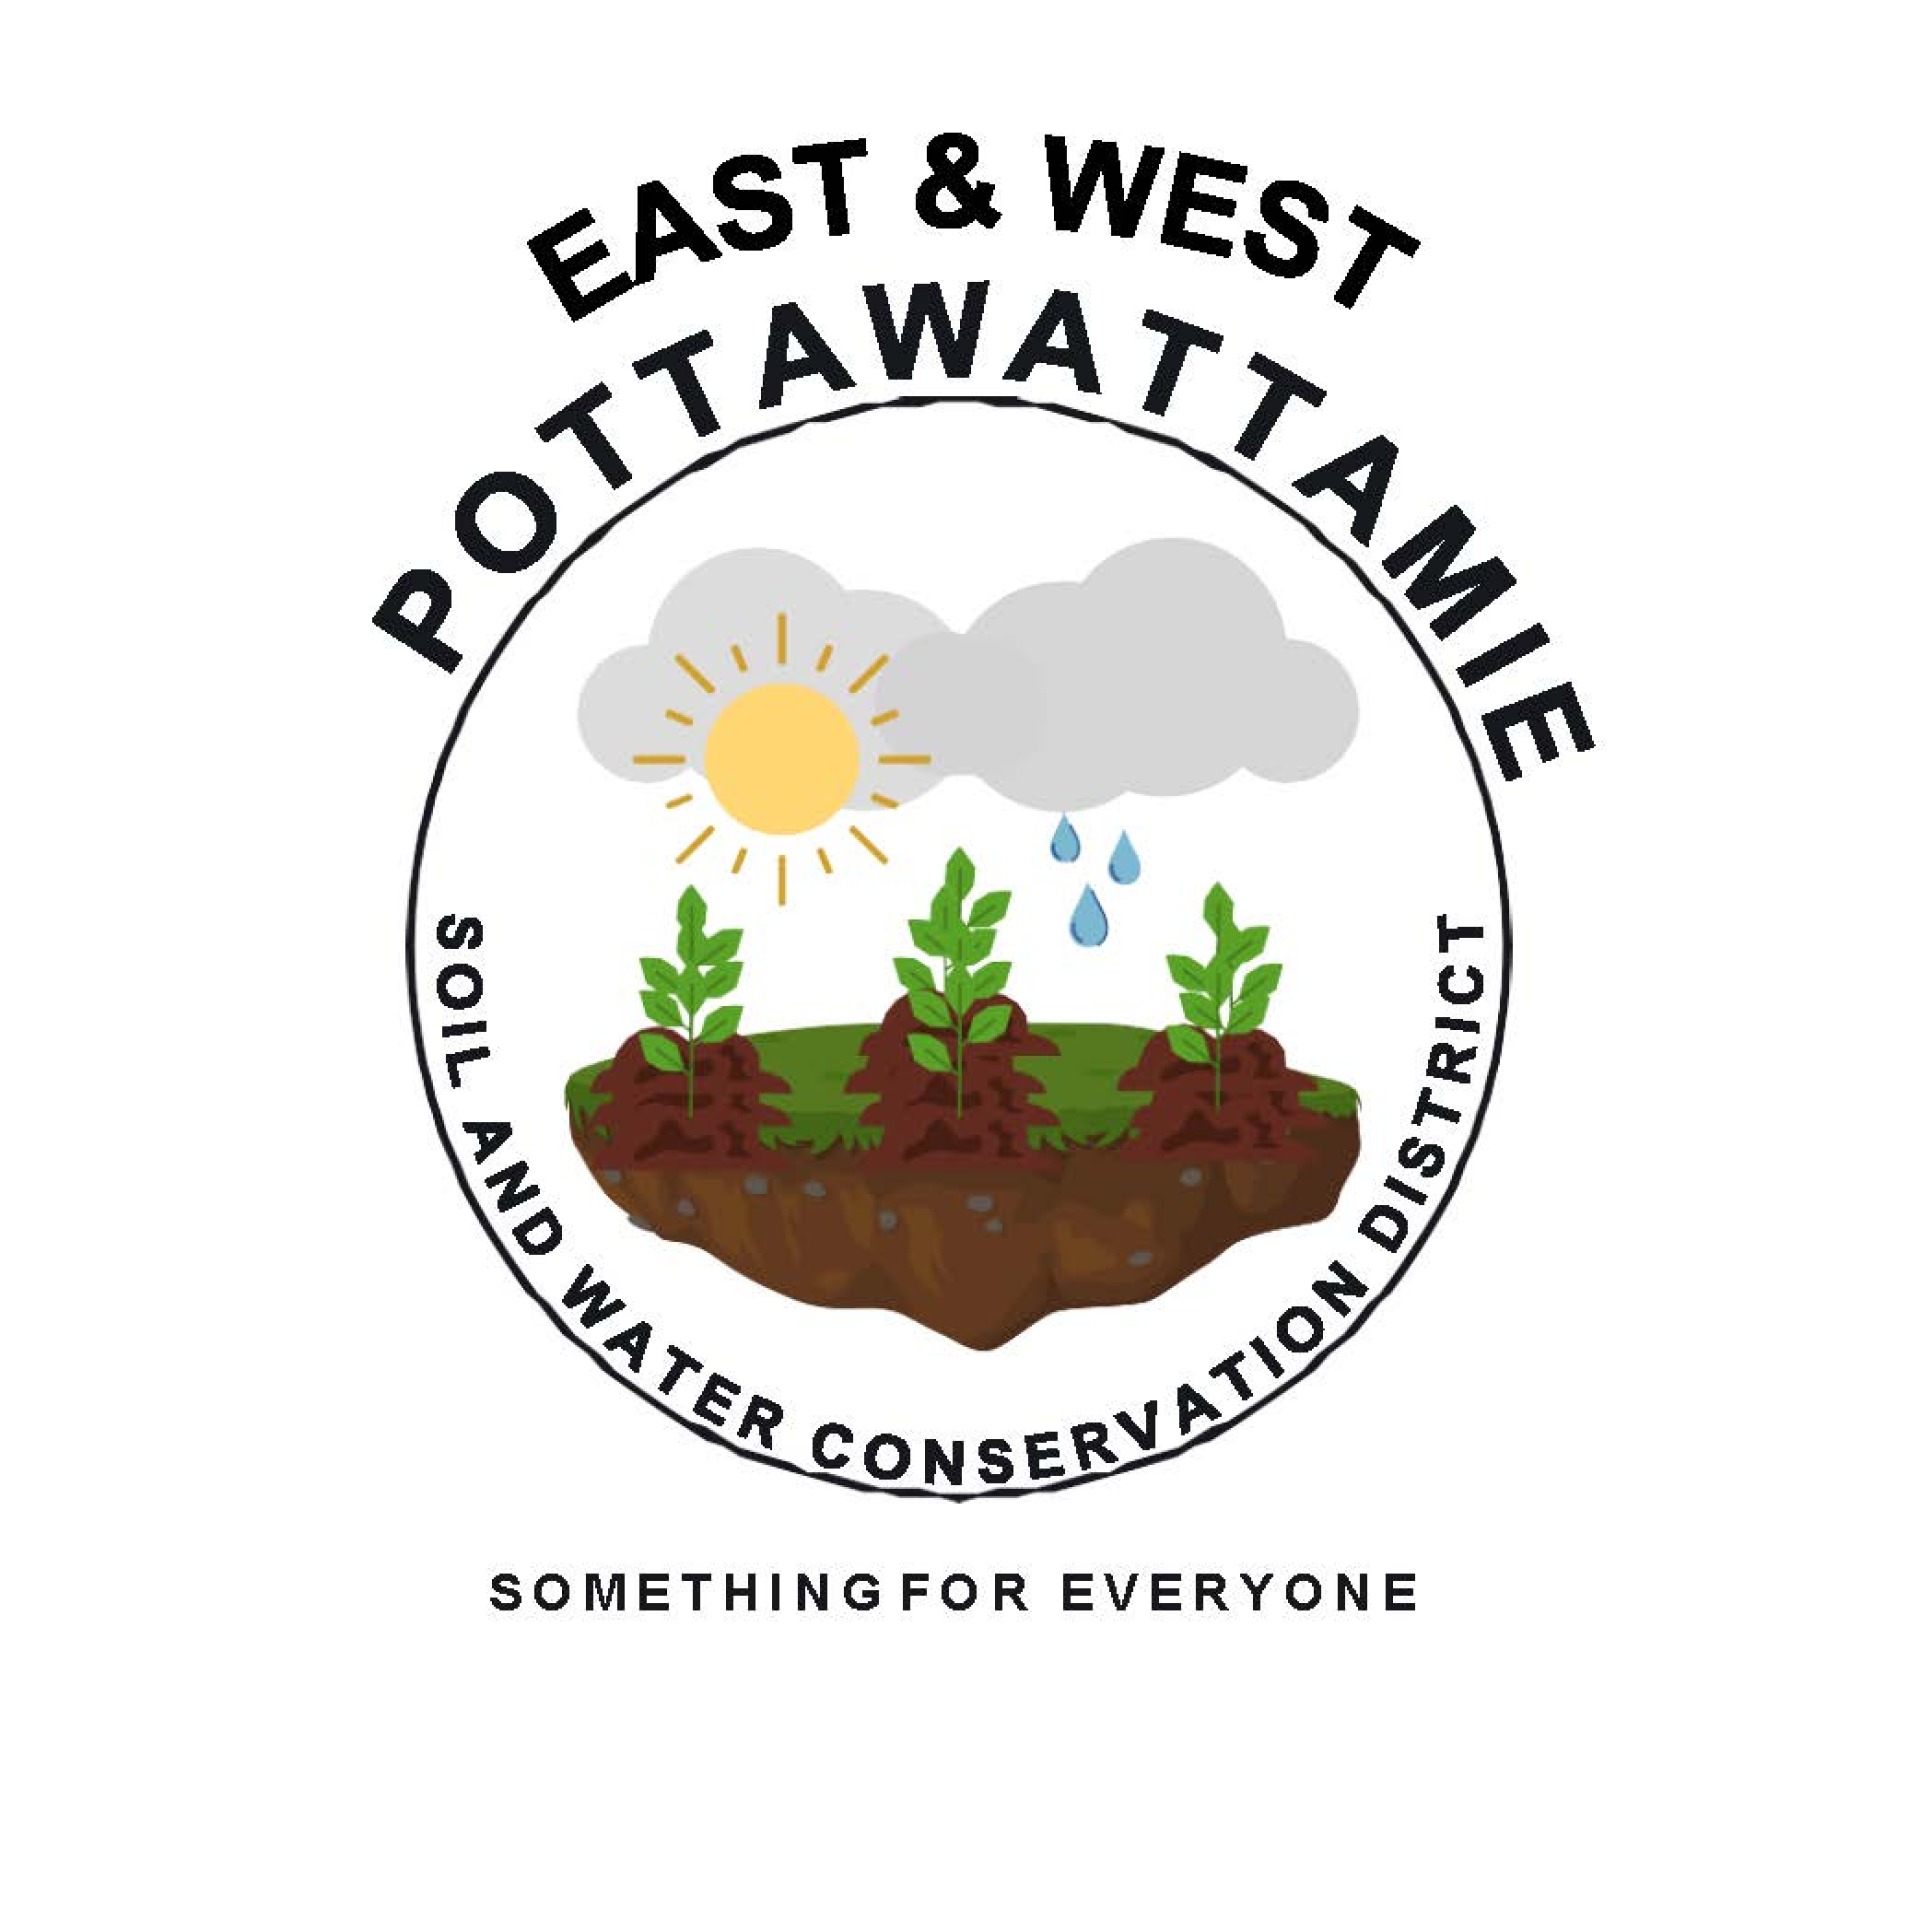 Soil & Water Logo